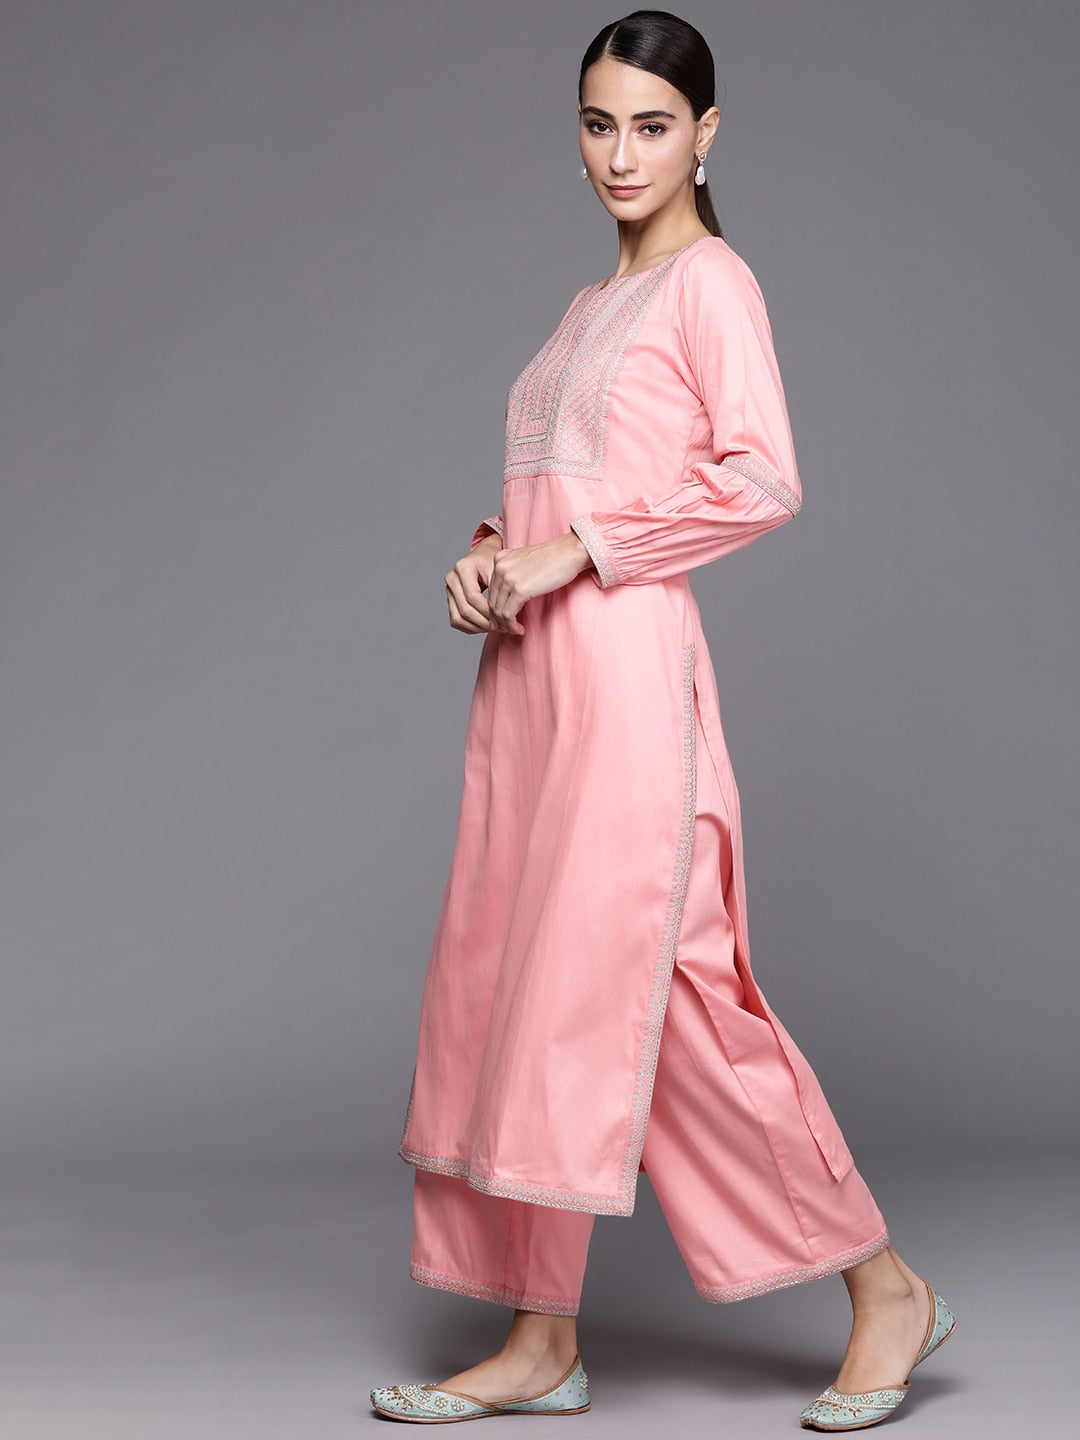 Libas Pink Floral Yoke Design Regular Kurta with Palazzos & Dupatta - Distacart